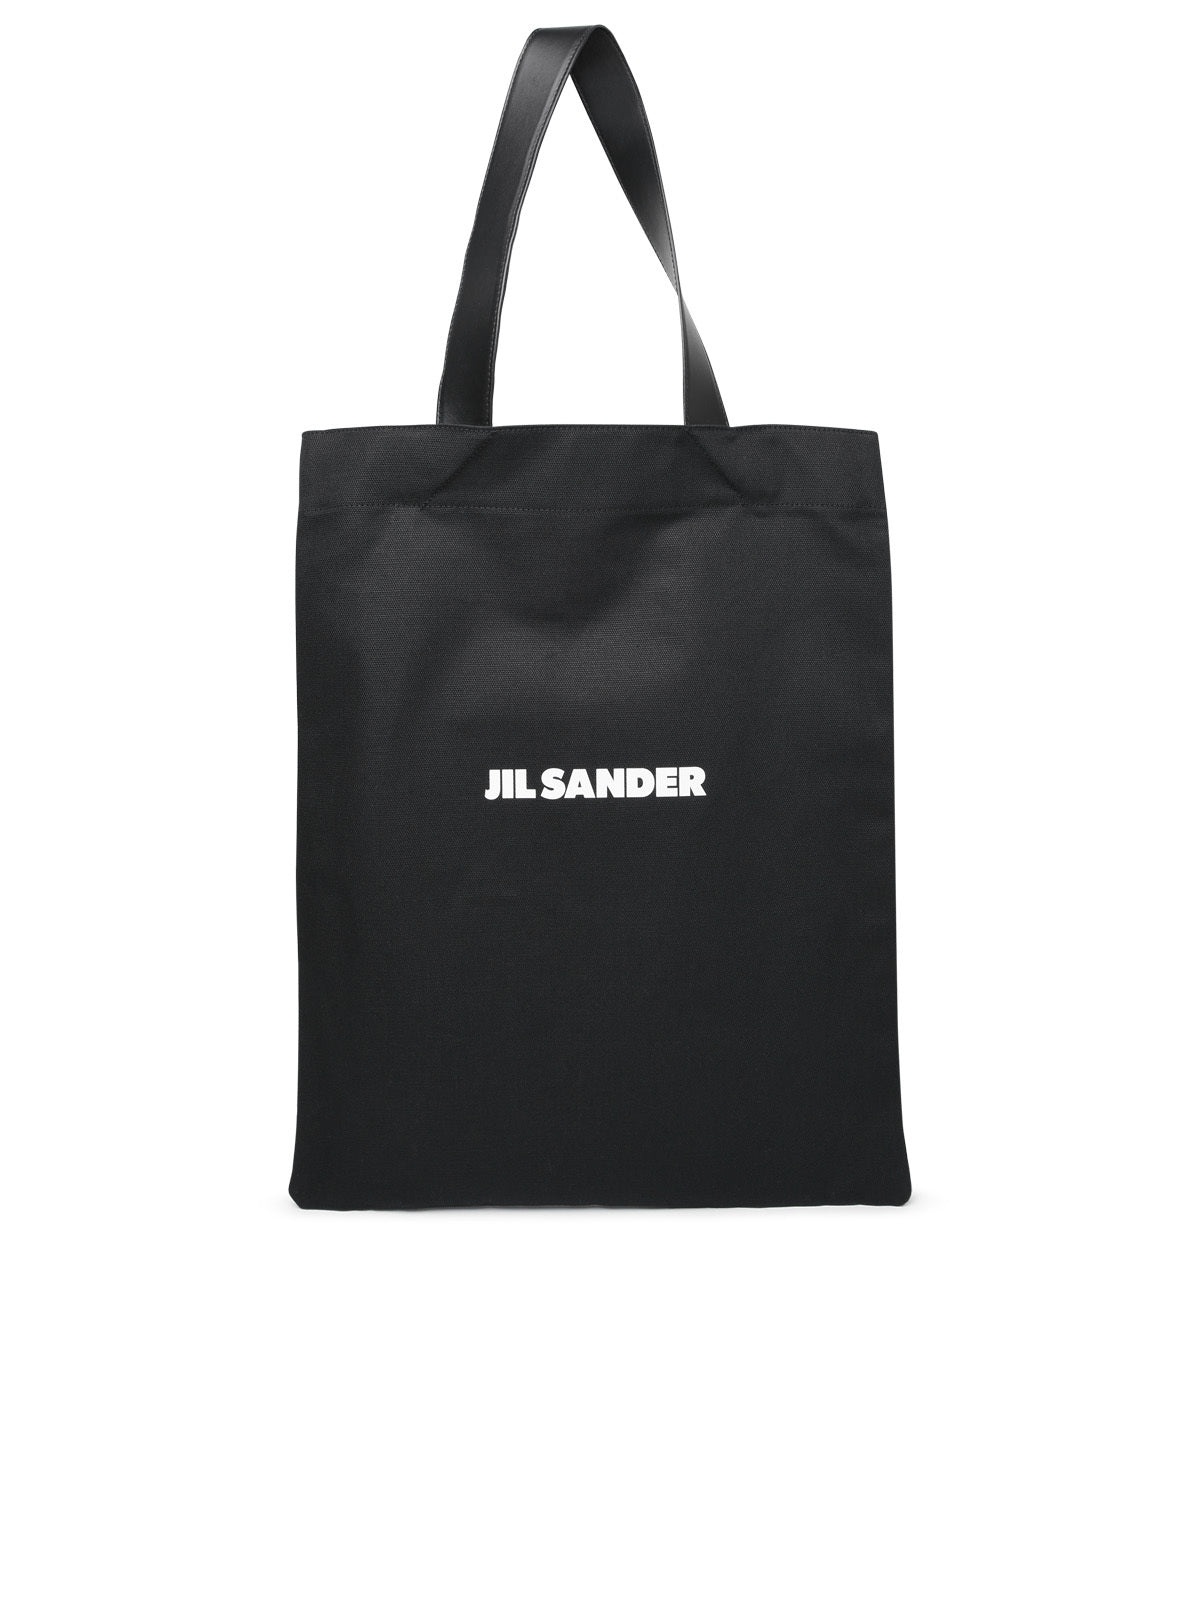 Jil Sander Man Jil Sander Black Tela Bag - 1